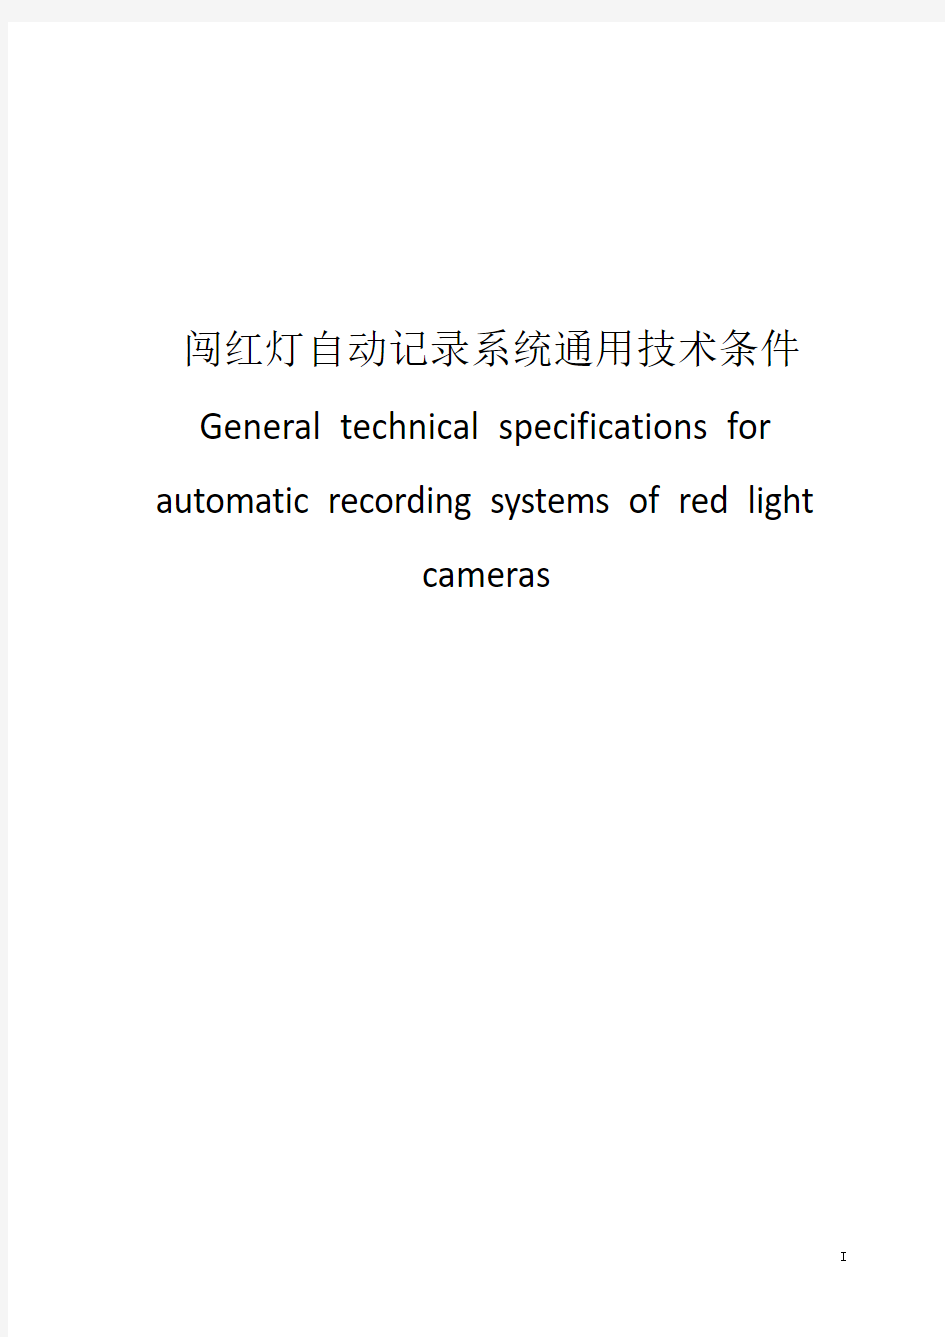 闯红灯自动记录系统通用技术条件-2014年最新